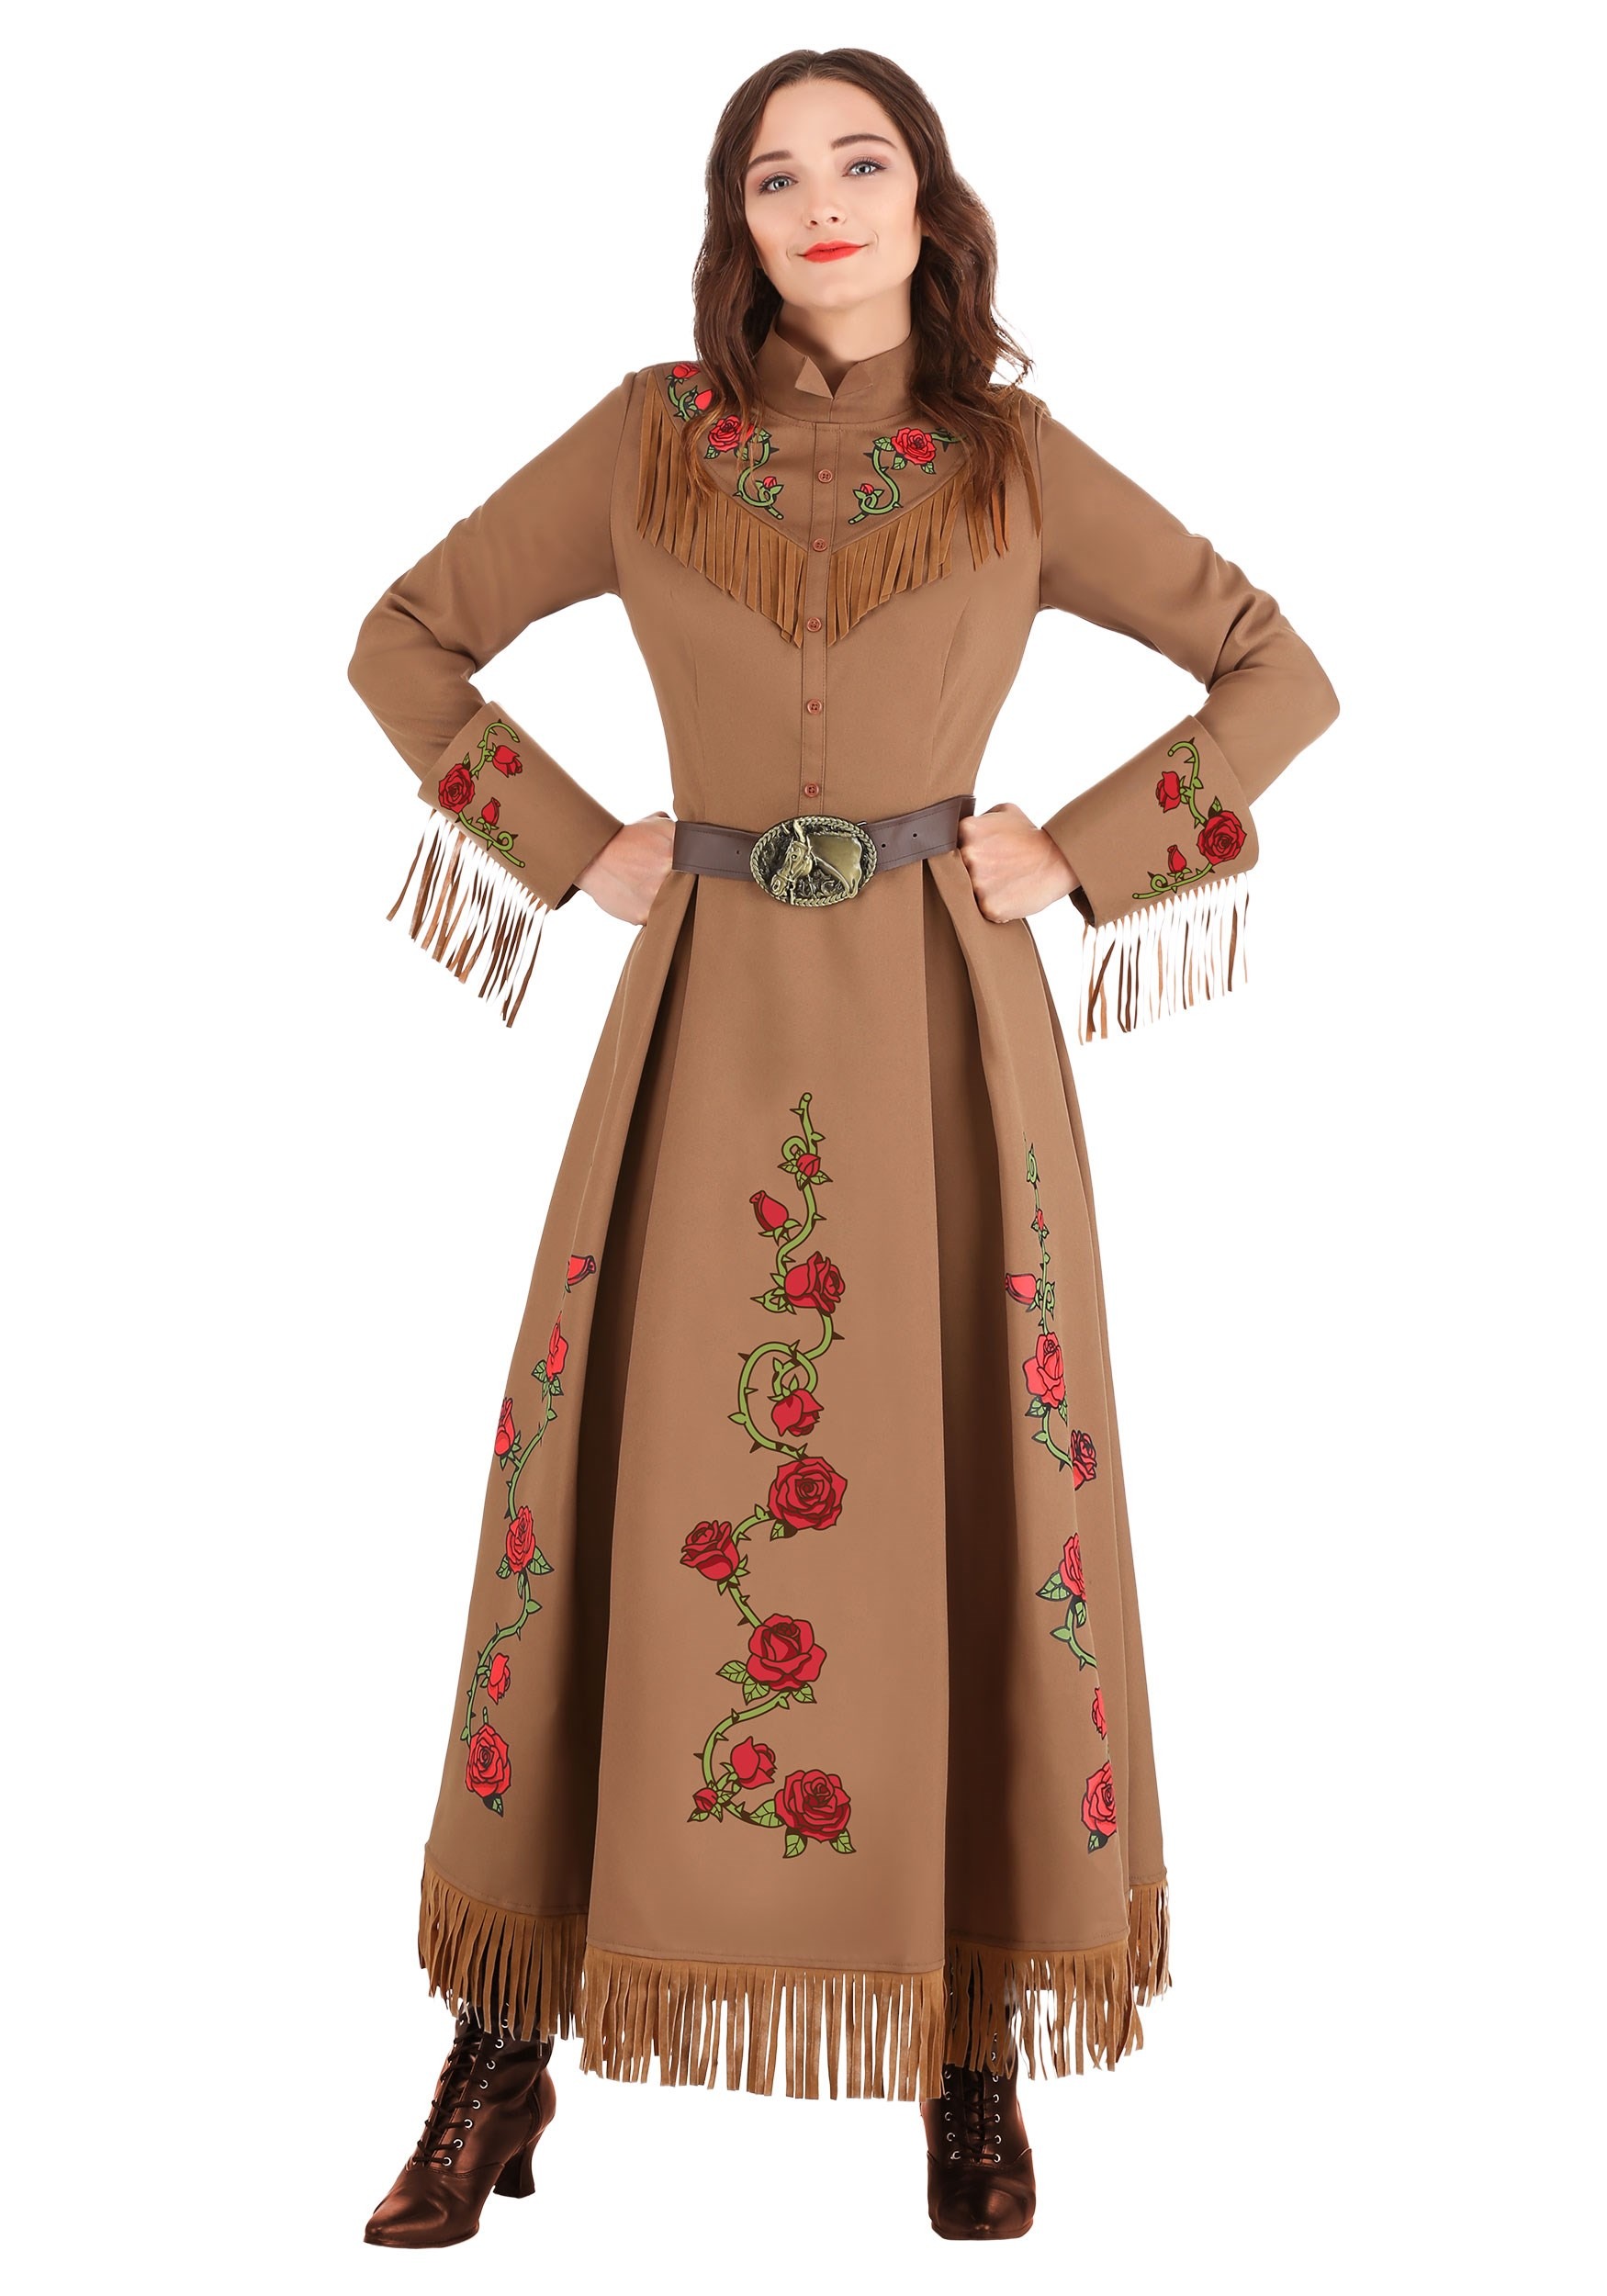 Annie Oakley Cowgirl Fancy Dress Costume For Women , Historical Figure Fancy Dress Costumes